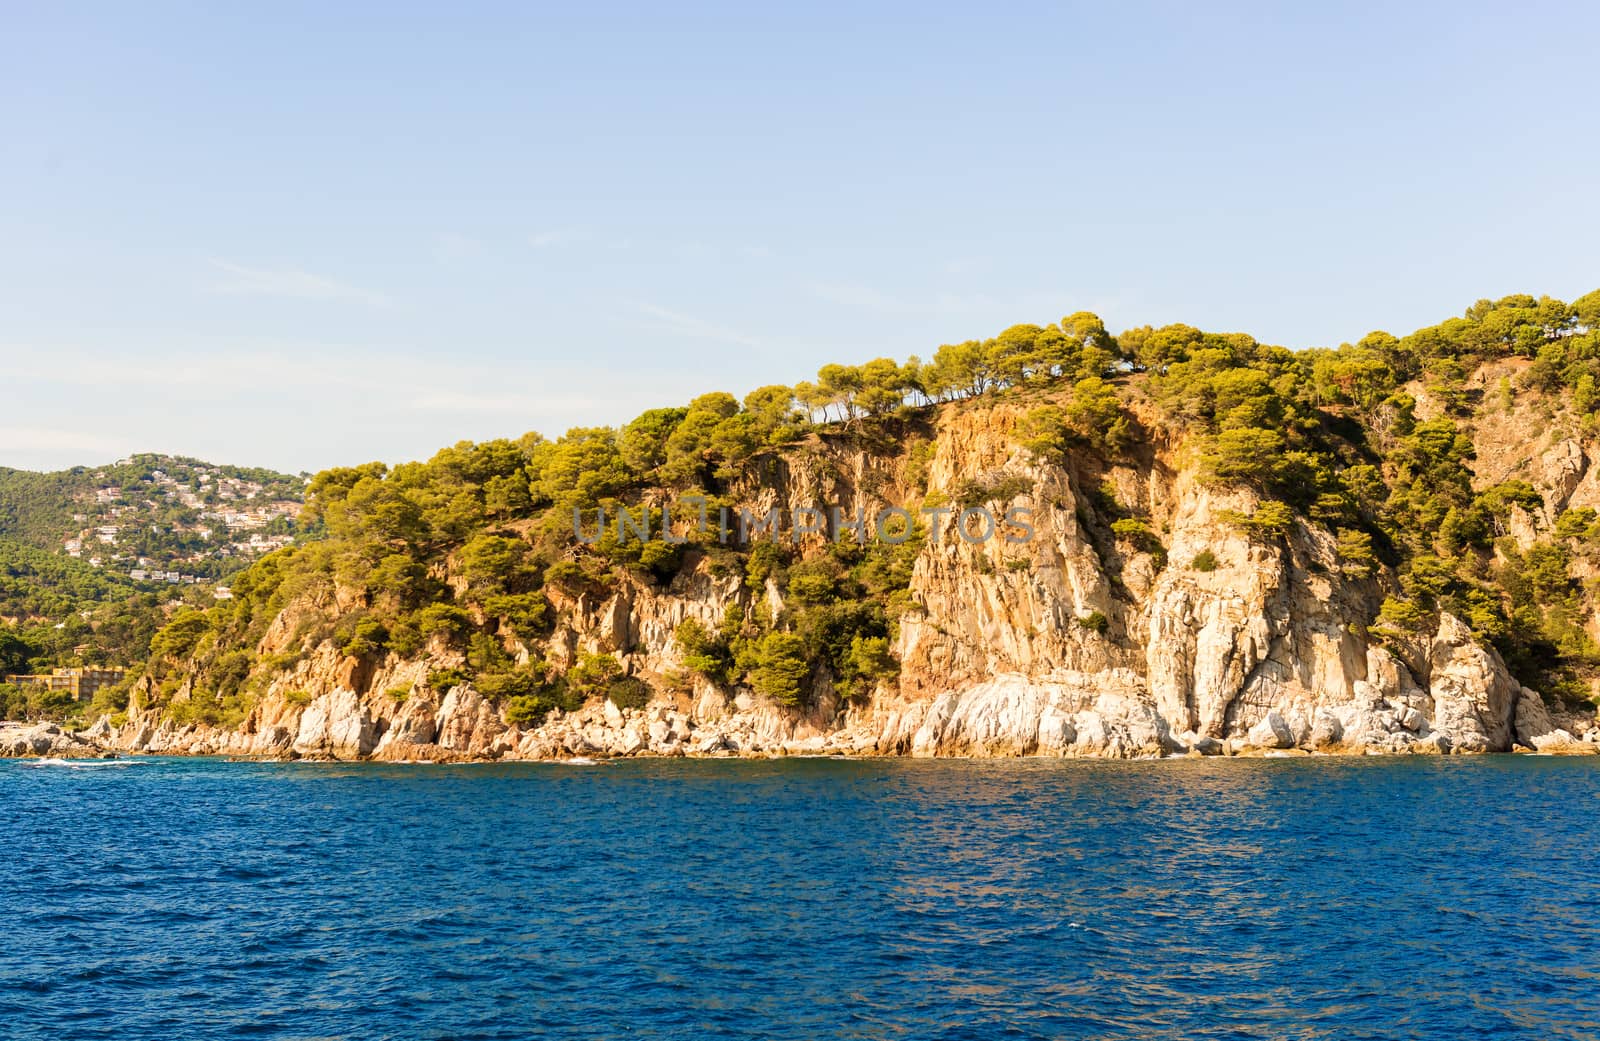 Cliffs of the Costa Brava coastline in Catalonia, Spain